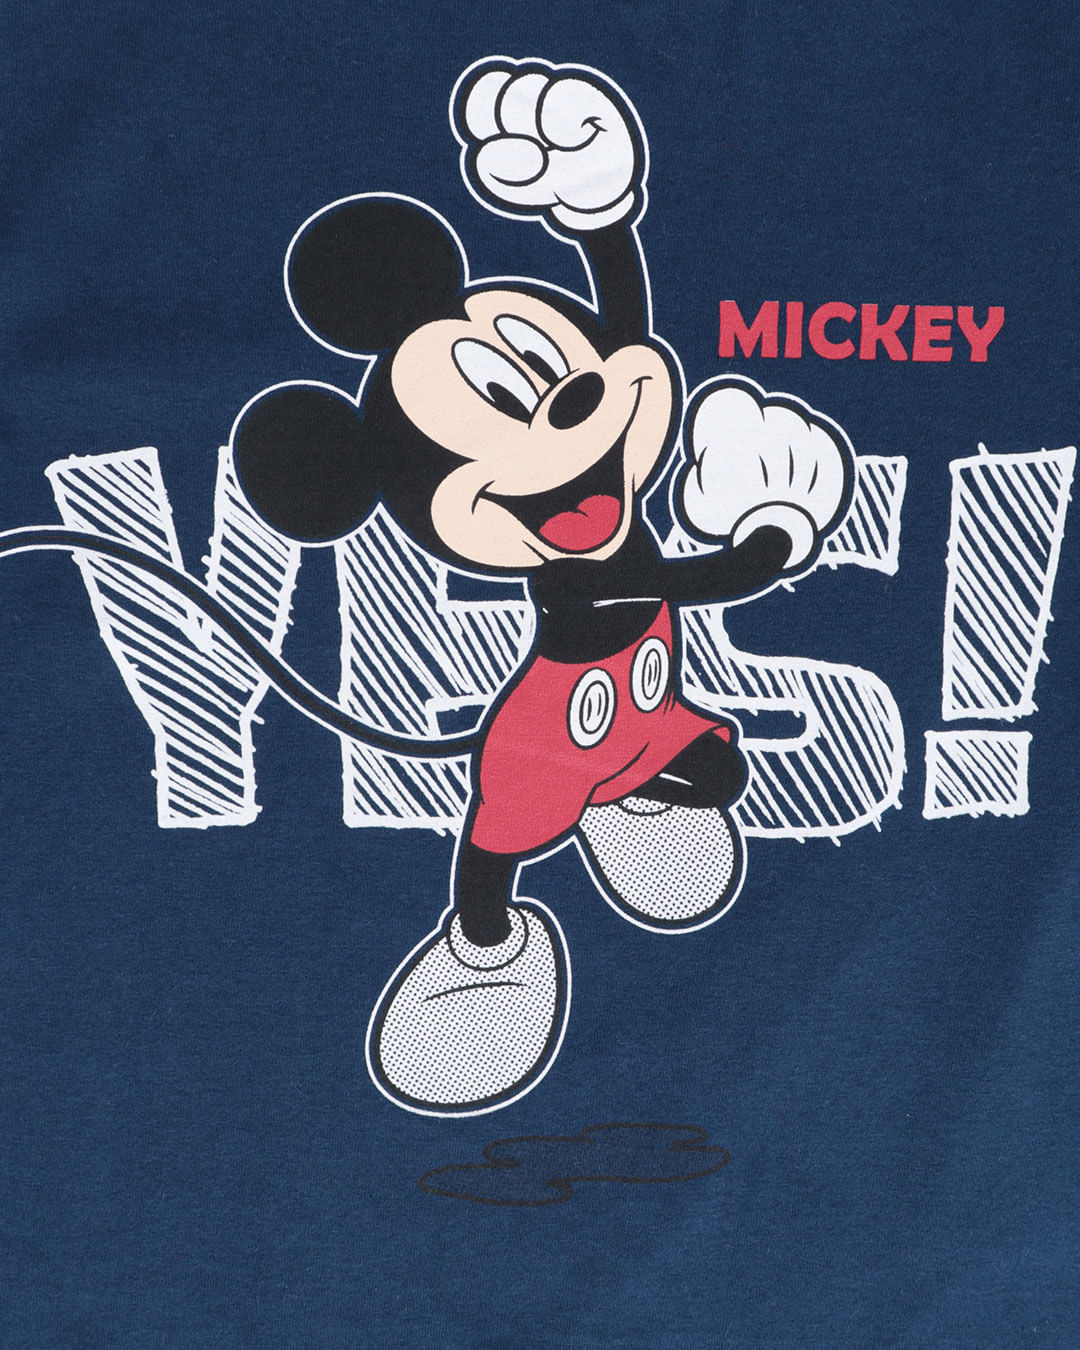 Camiseta-Bebe-Disney-Mickey-Mouse-Marinho